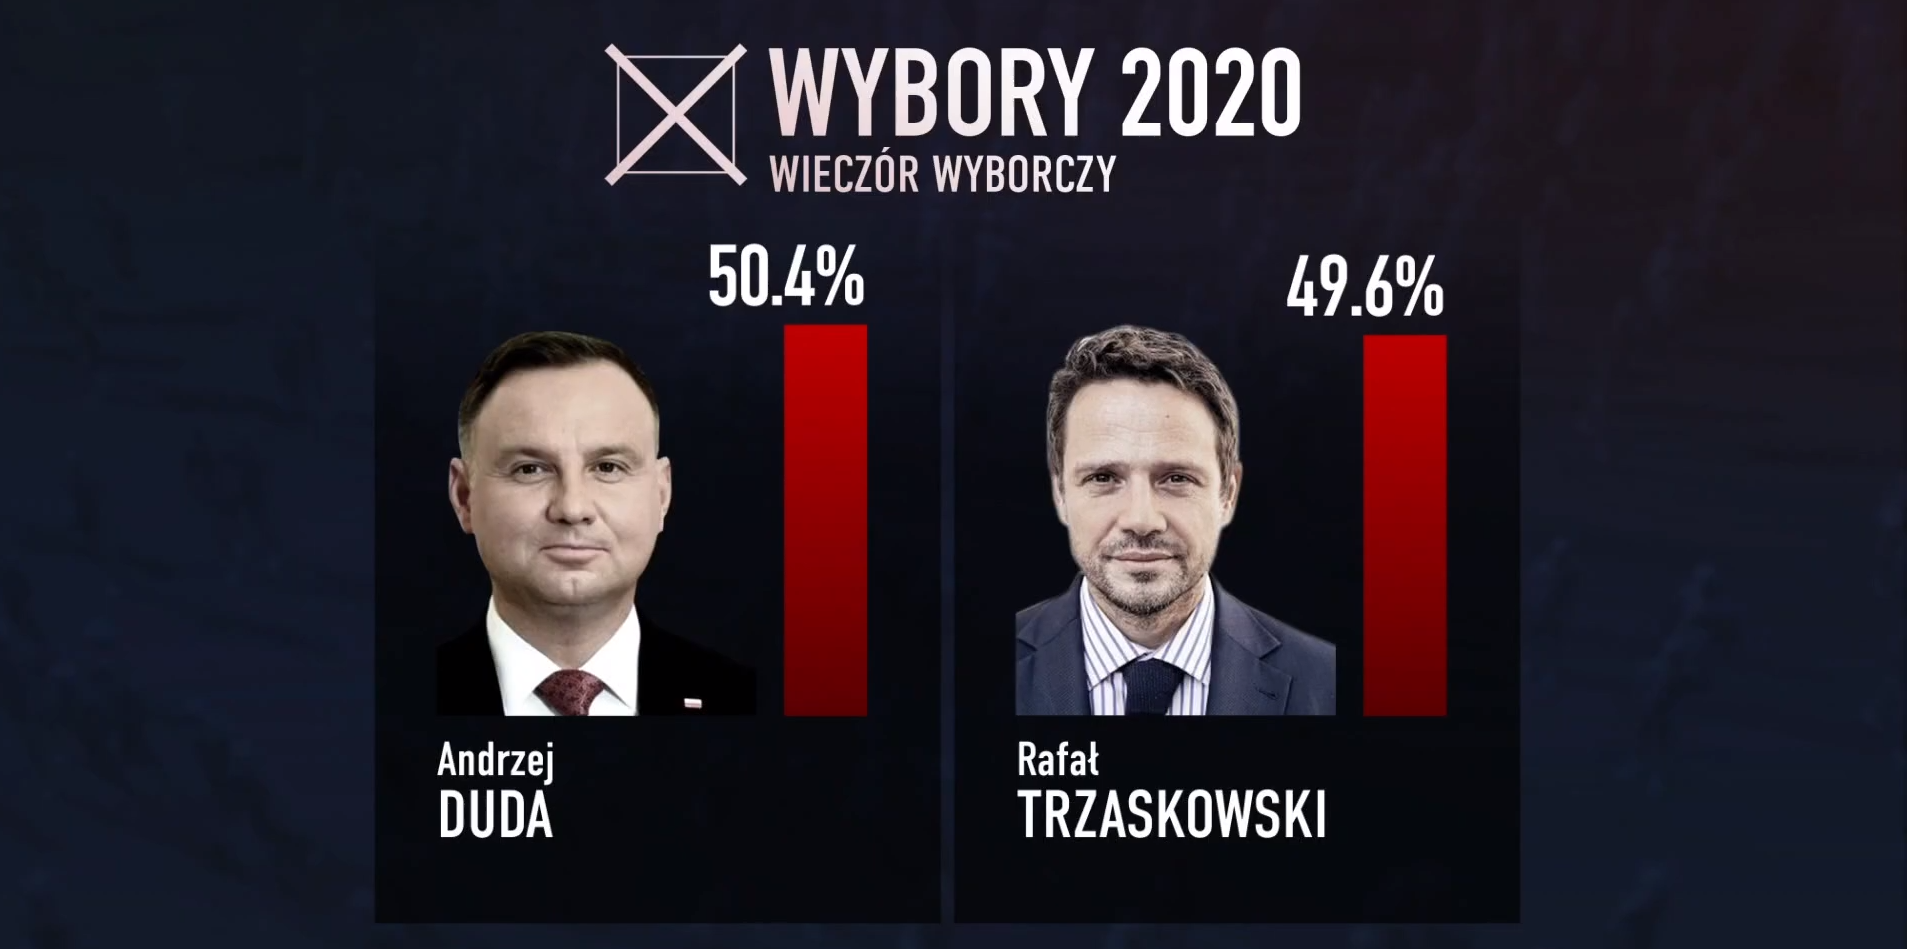 Выборы президента Польши. Дуда идет на второй срок, обгоняя Тшасковского на 0,8% - экзитпол. Скриншот из видео